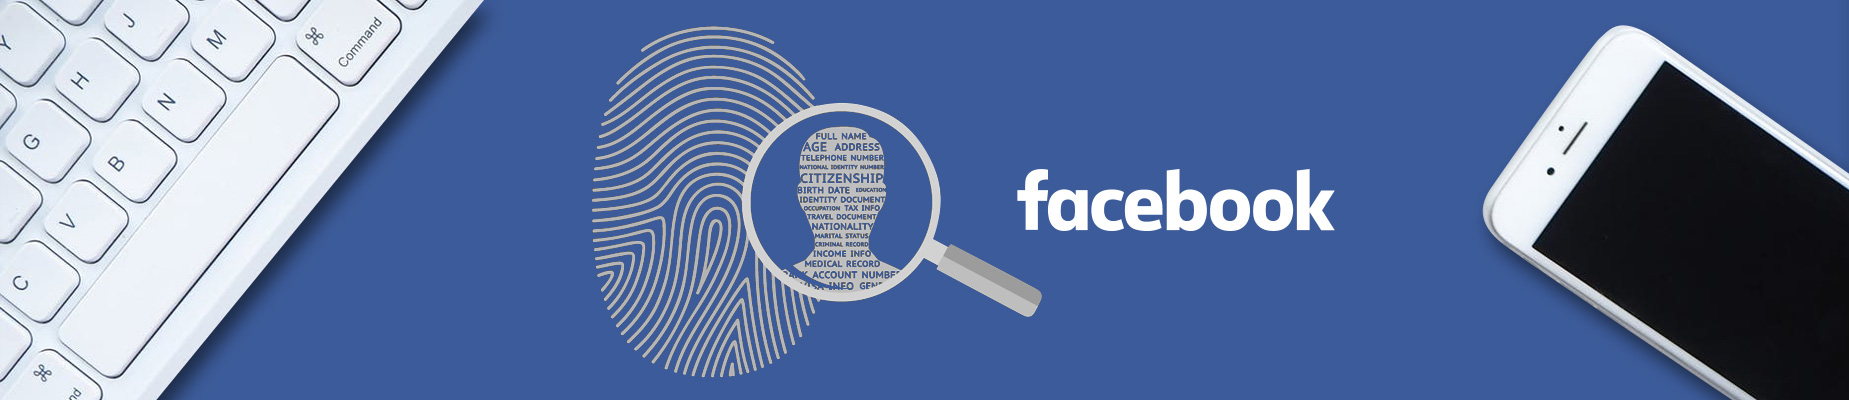 Avoid Identity Theft on Facebook: 4 great tips